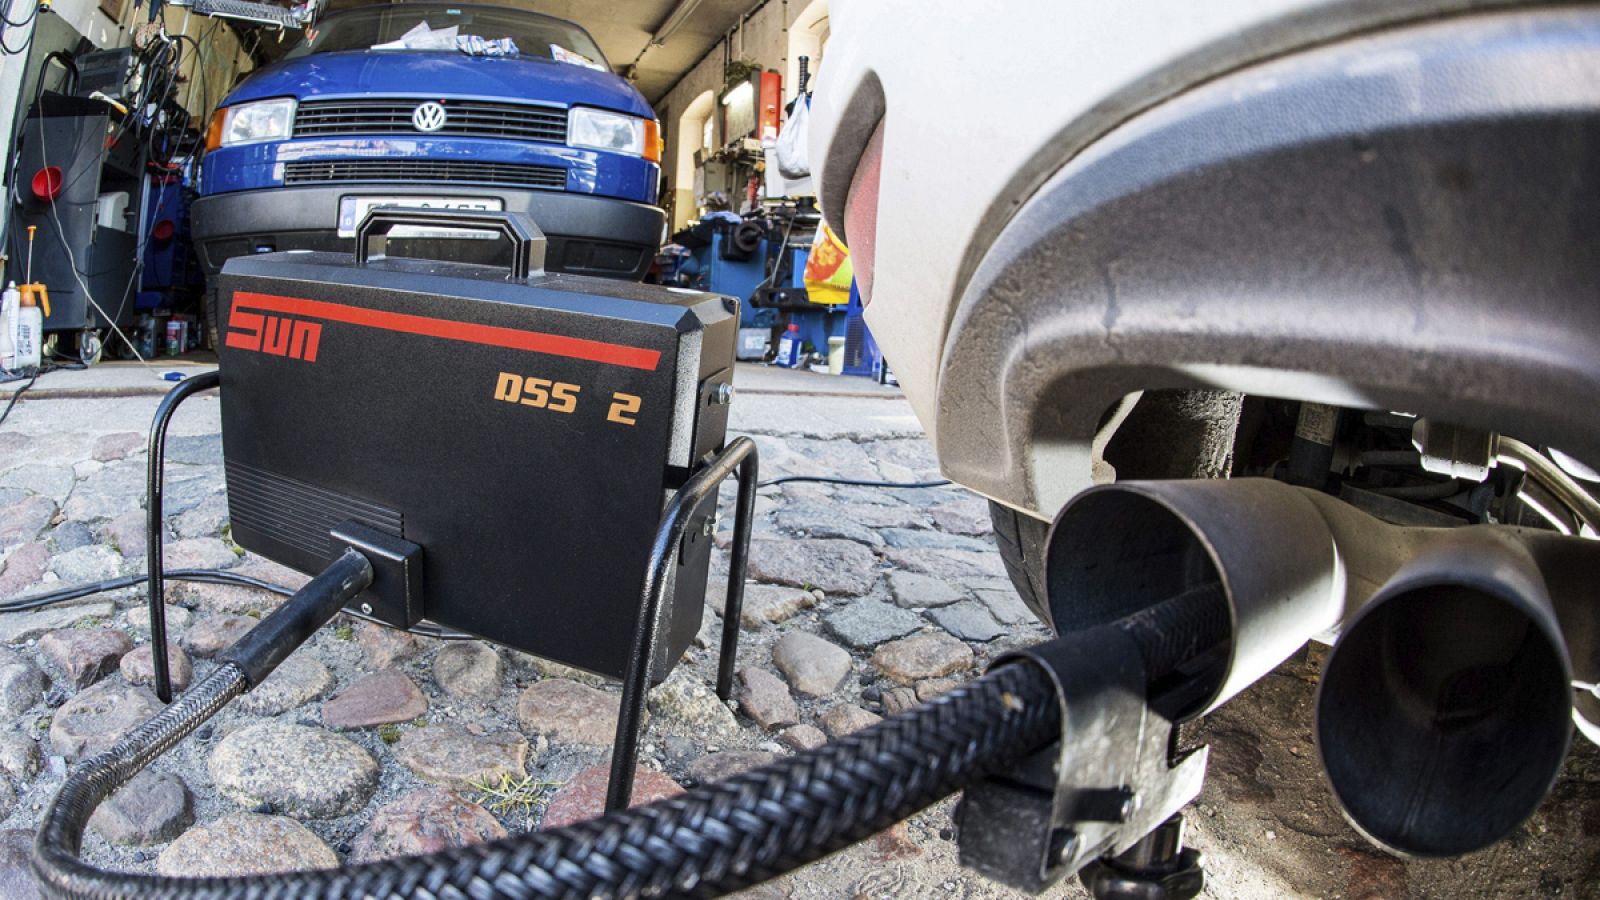 Un dispositivo mide los niveles de emisiones del motor diésel de un Volkswagen Golf 2.0 TDI en un taller de Fráncfort del Oder